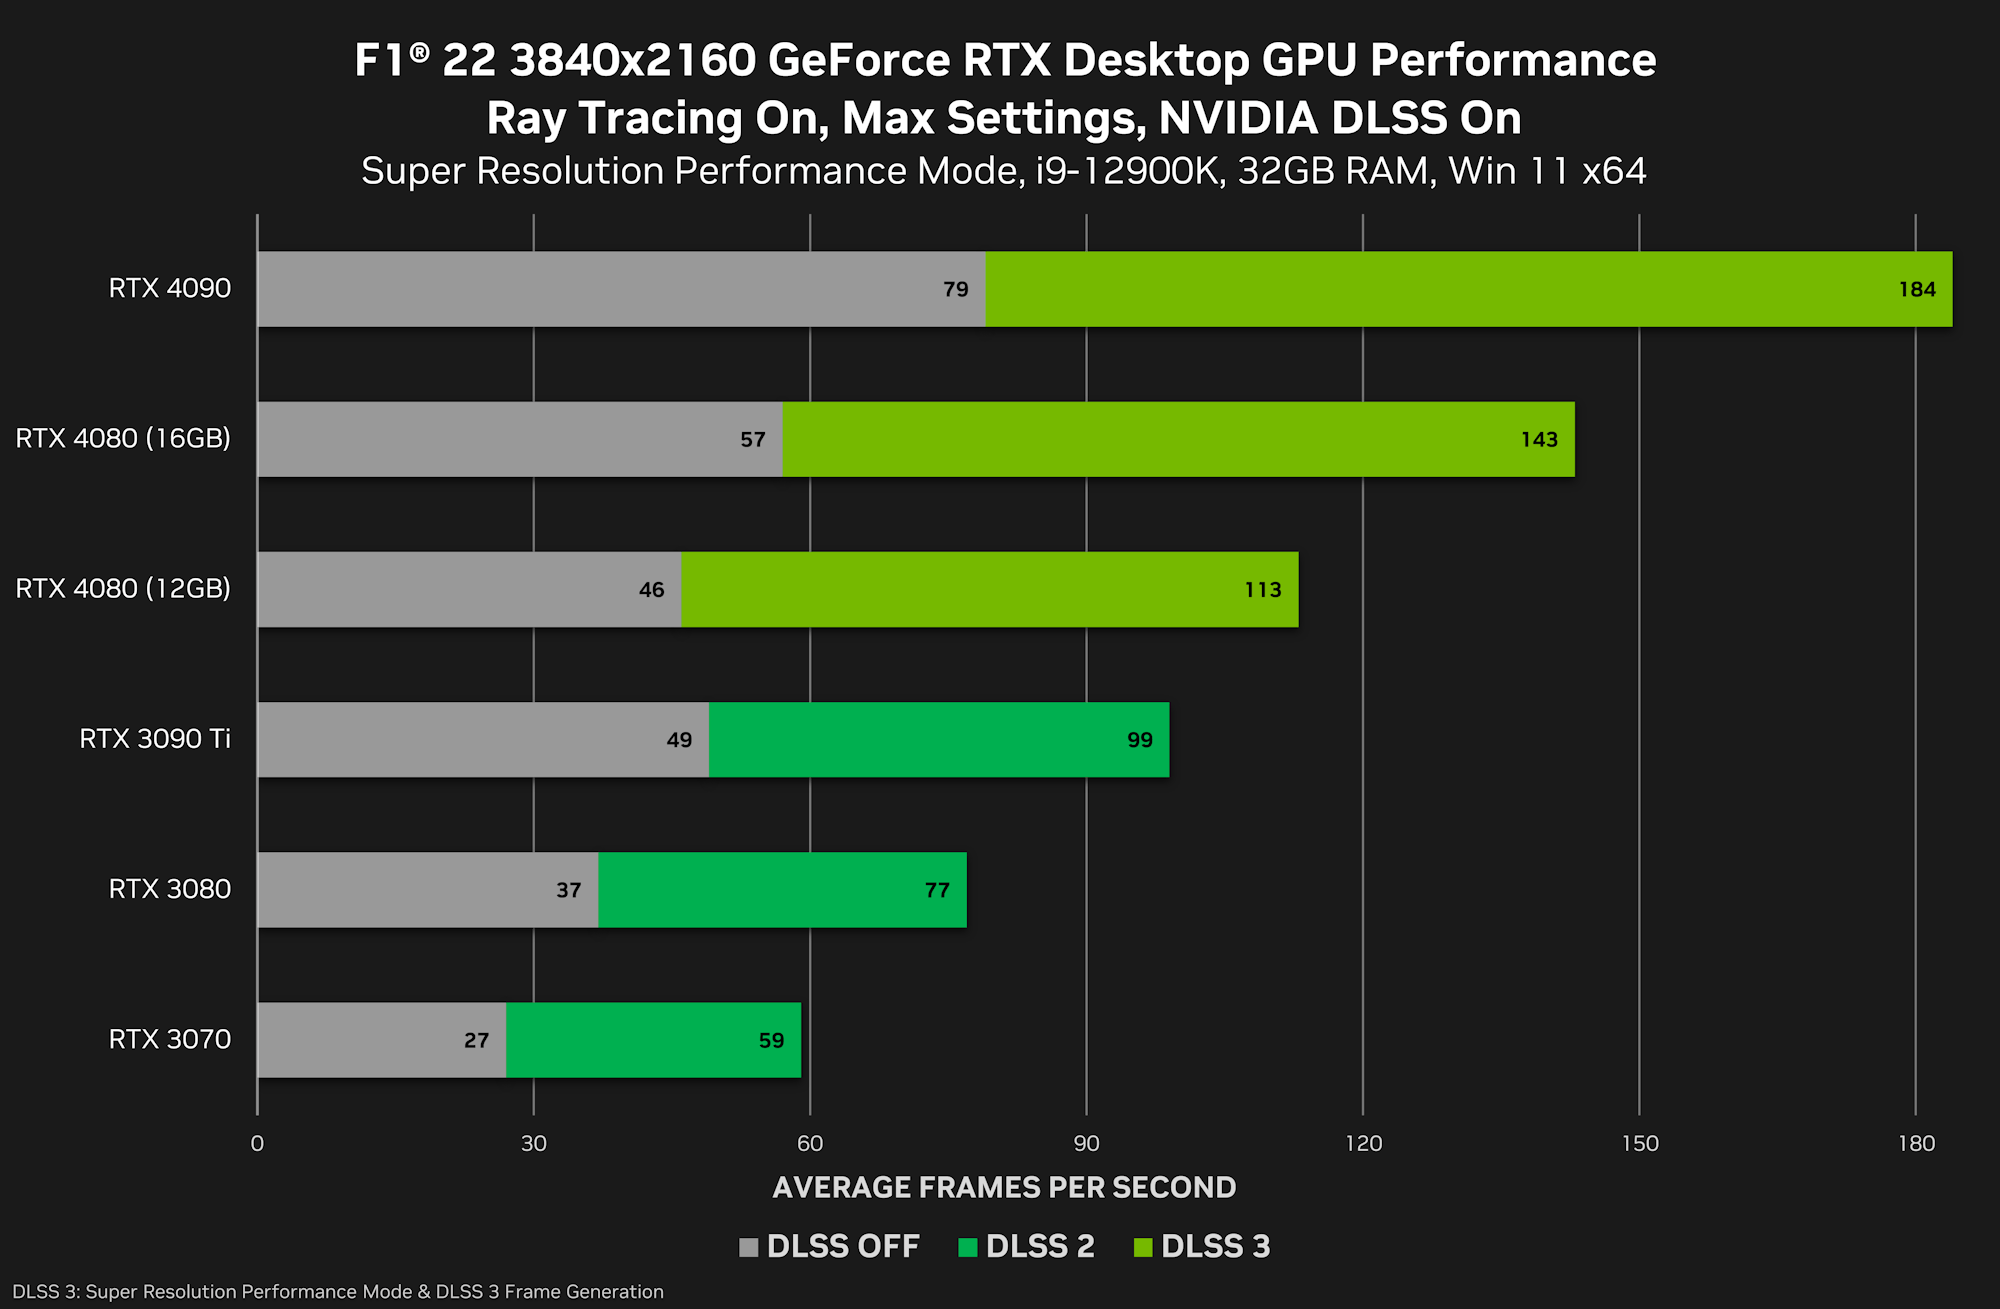 Gamingowe testy karty GeForce RTX 4080 pokazują duże różnice w wydajności modeli 12 GB i 16 GB